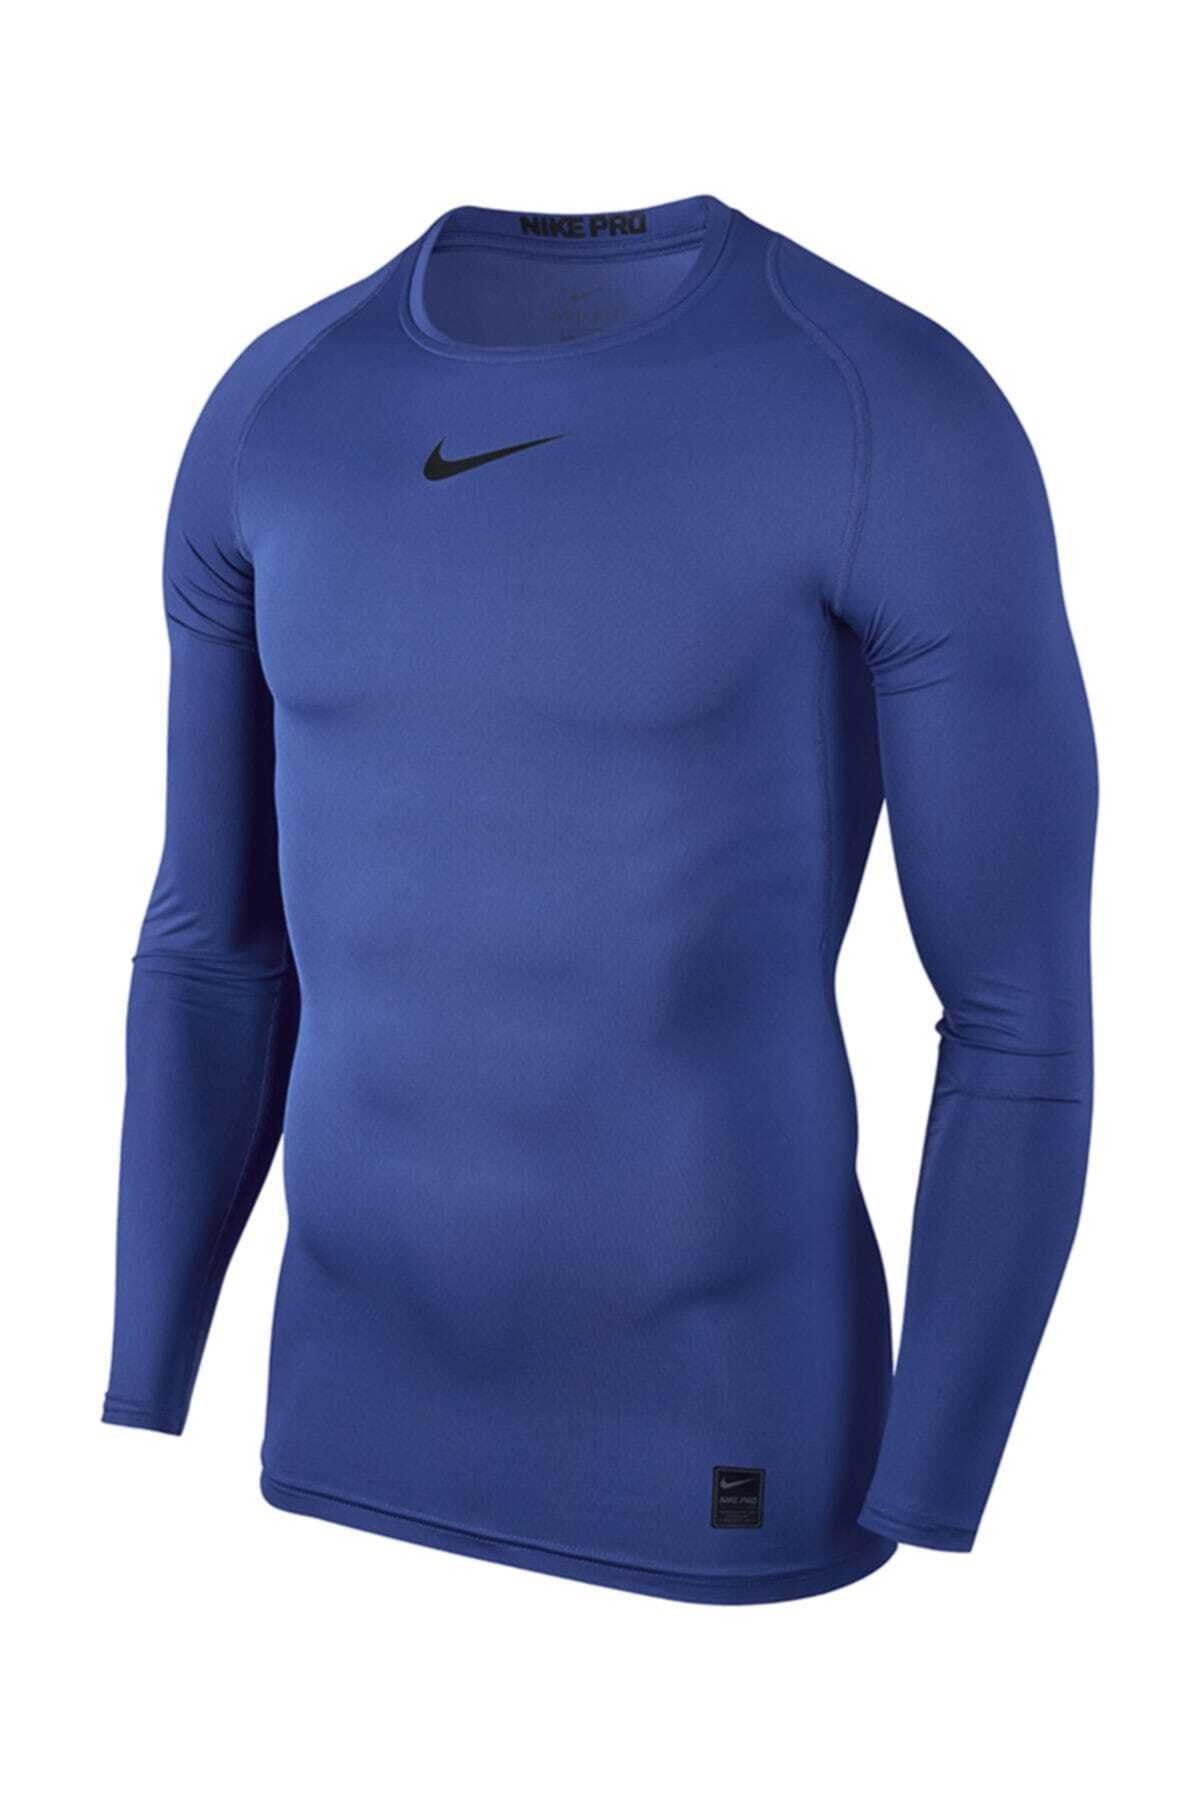 Nike Erkek Body - Pro Uzun Kollu Üst - 838077-480